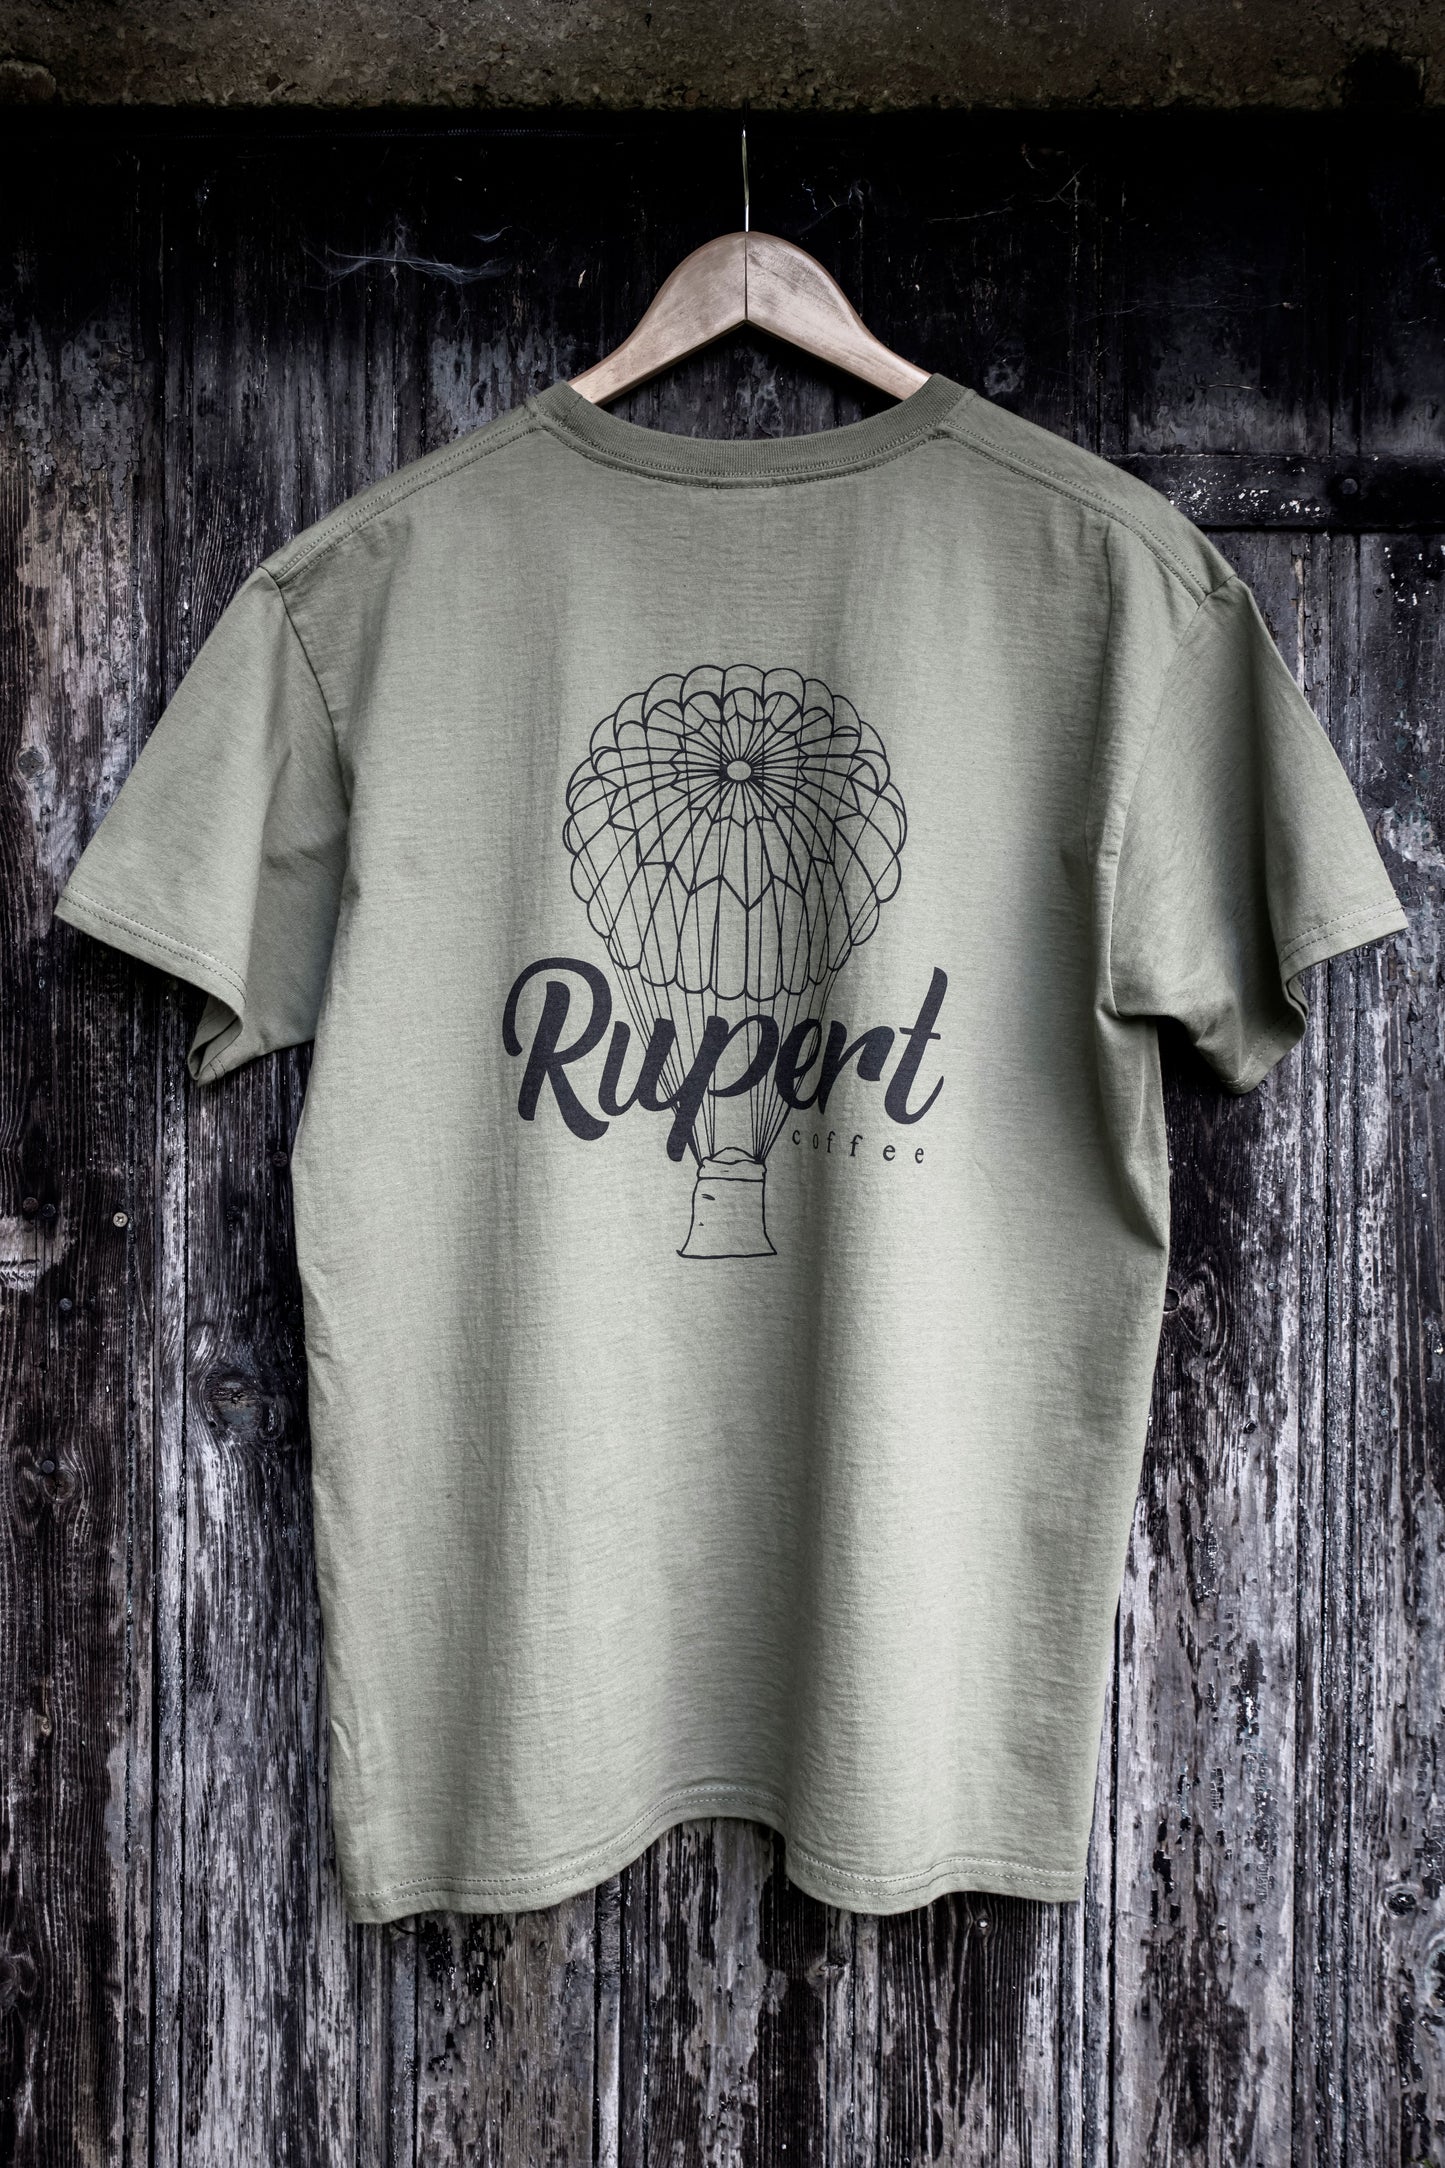 Rupert shirt